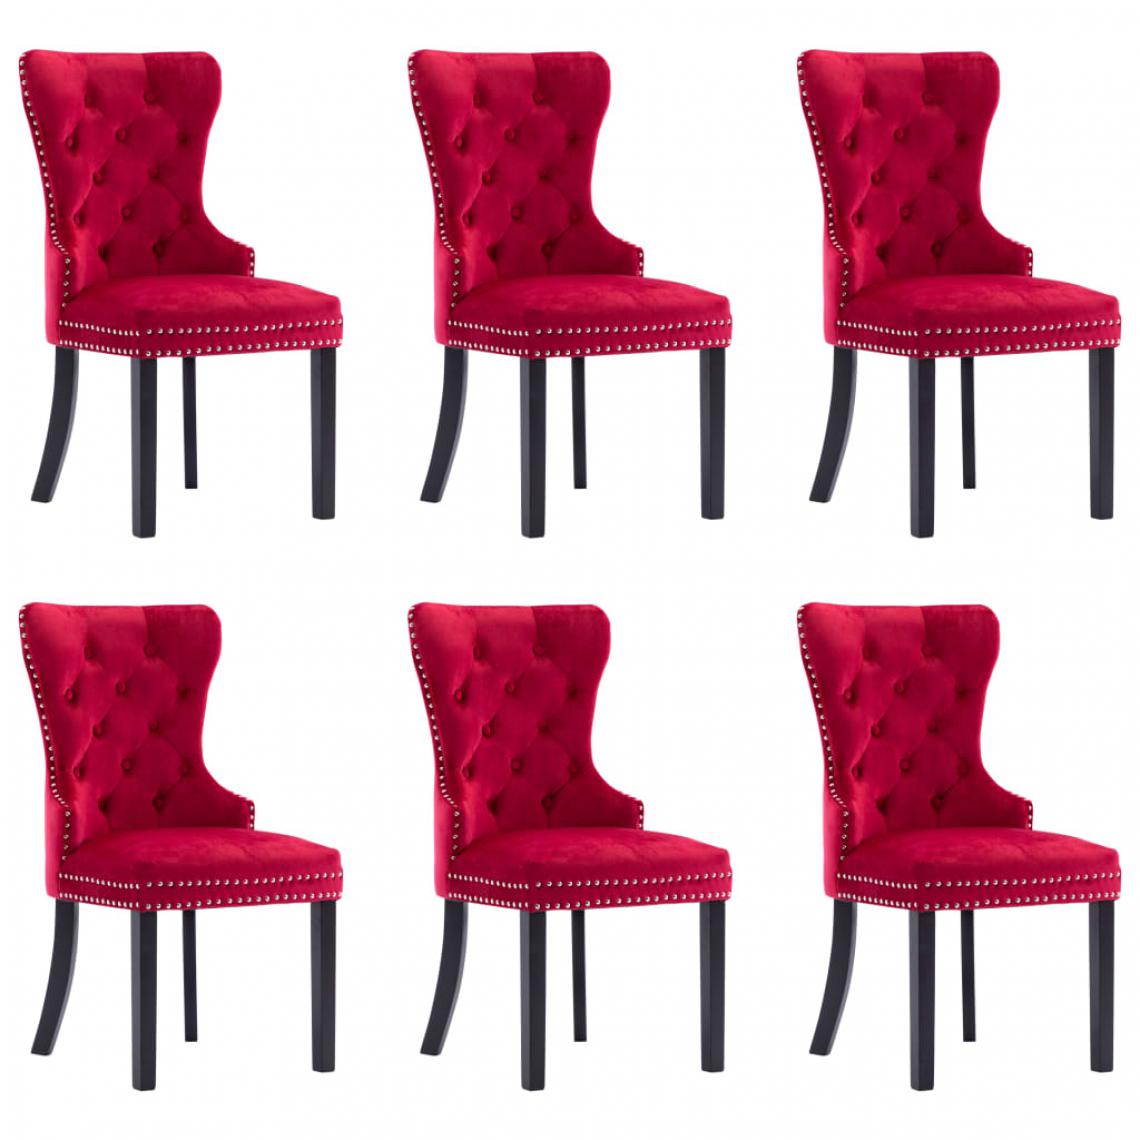 Icaverne - Contemporain Fauteuils et chaises edition Abuja Chaises de salle à manger 6 pcs Rouge bordeaux Velours - Chaises